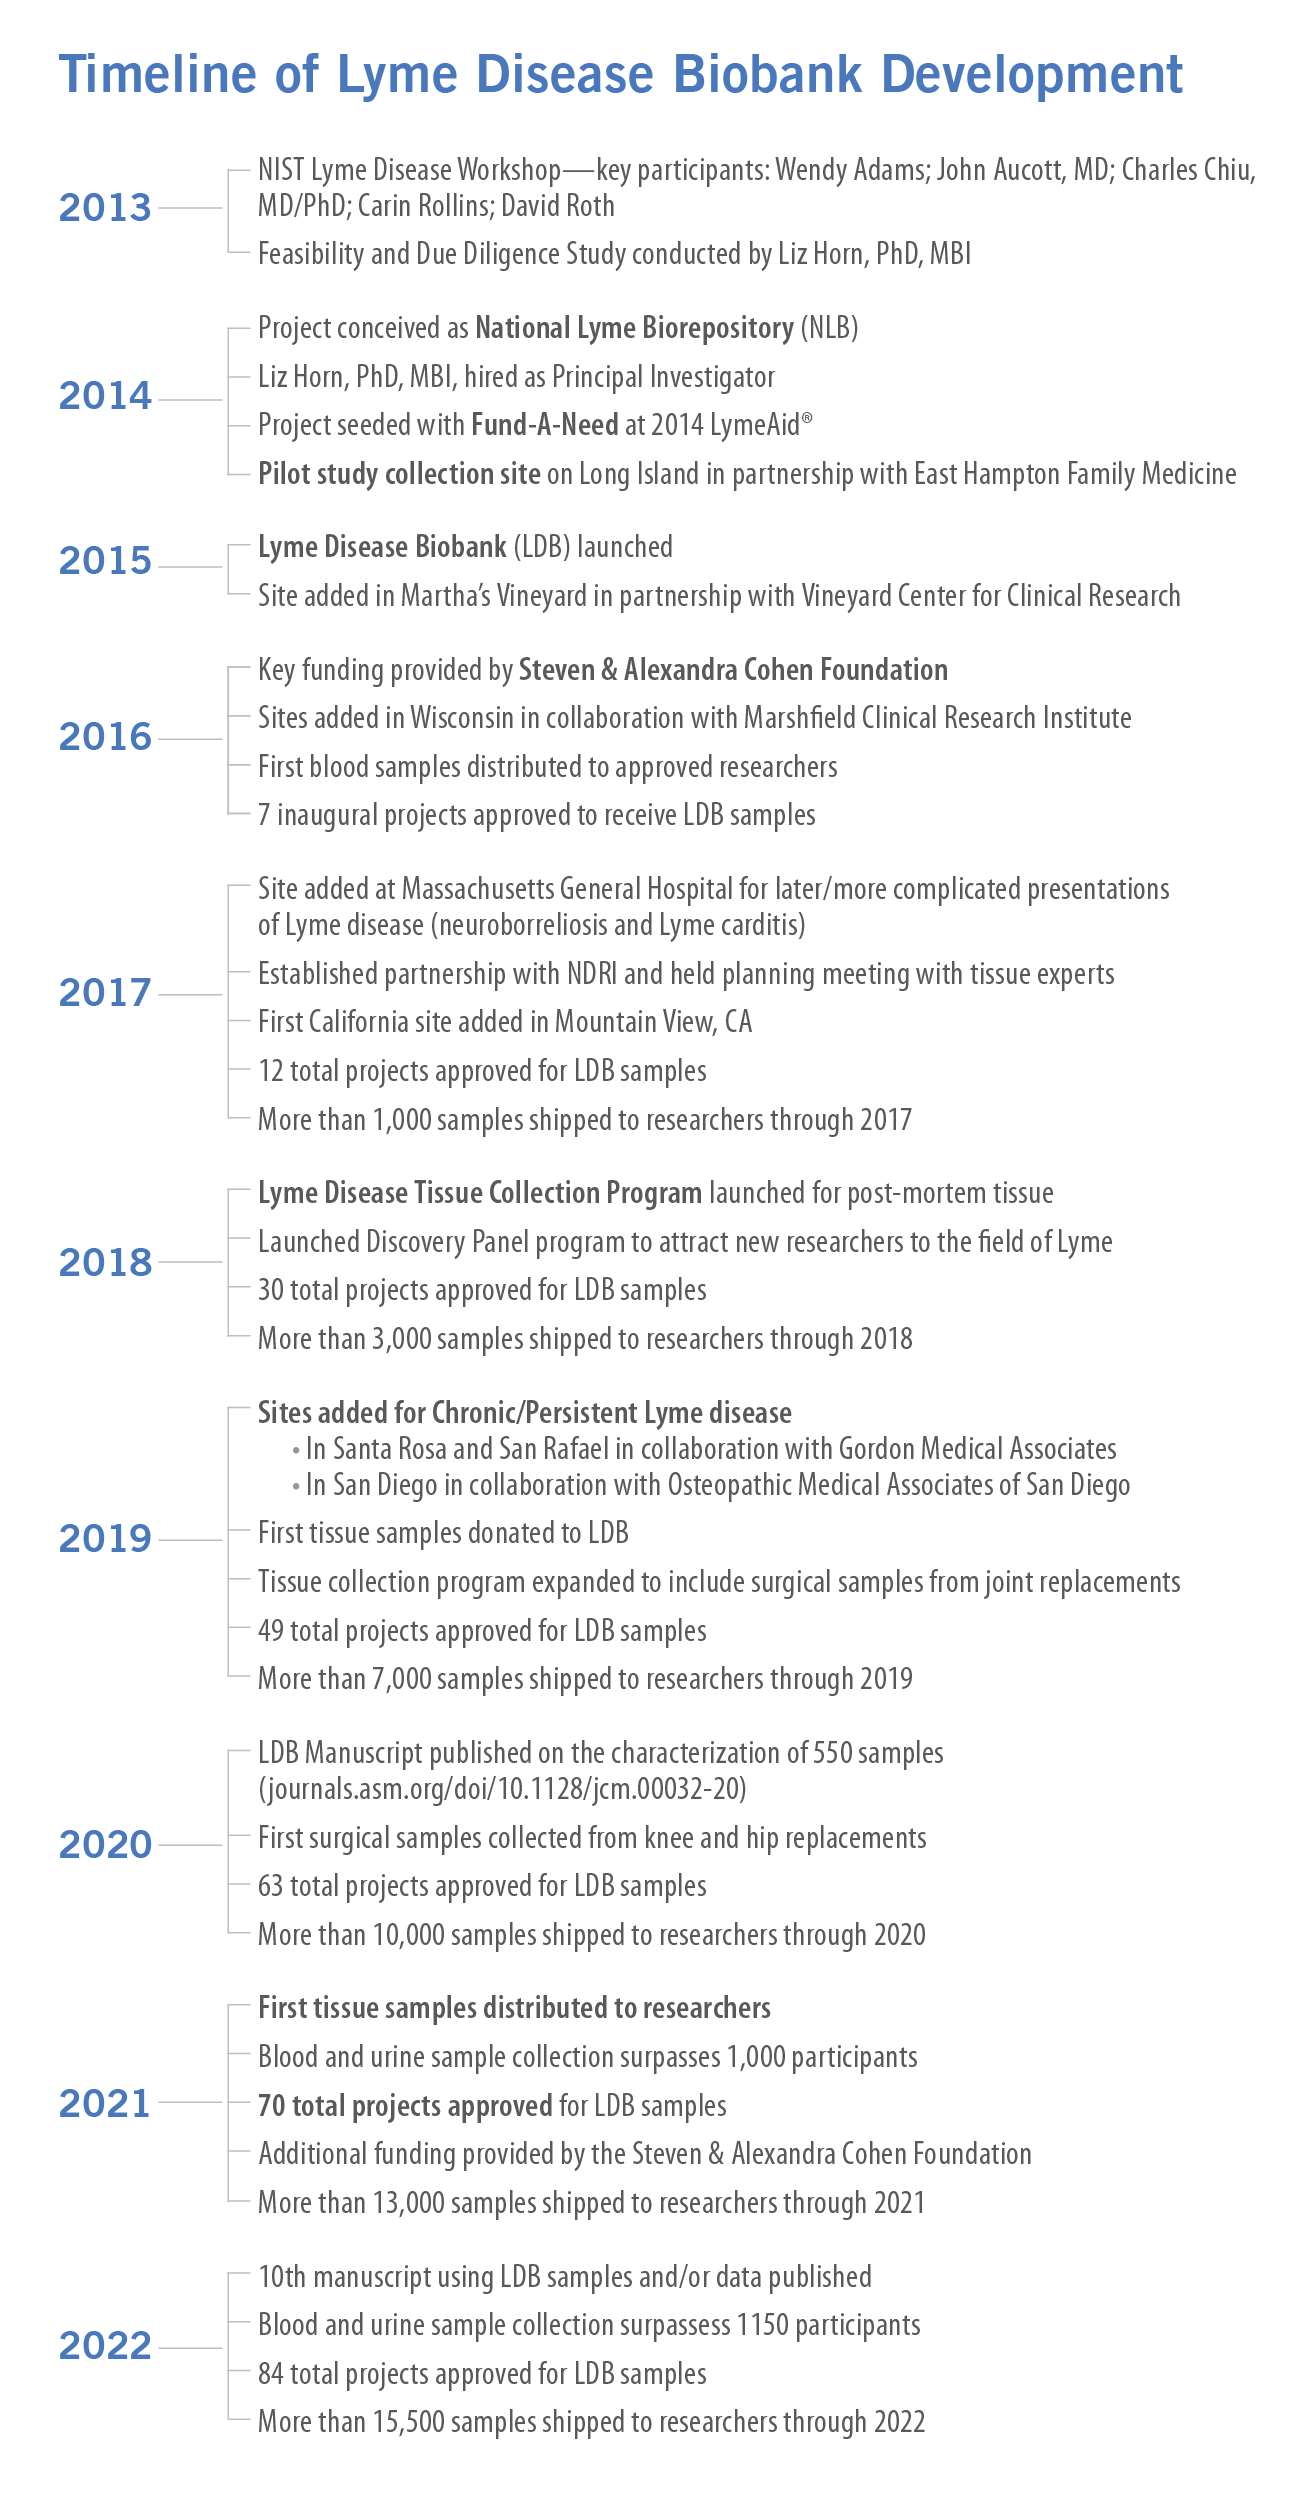 Lyme Disease Biobank Timeline